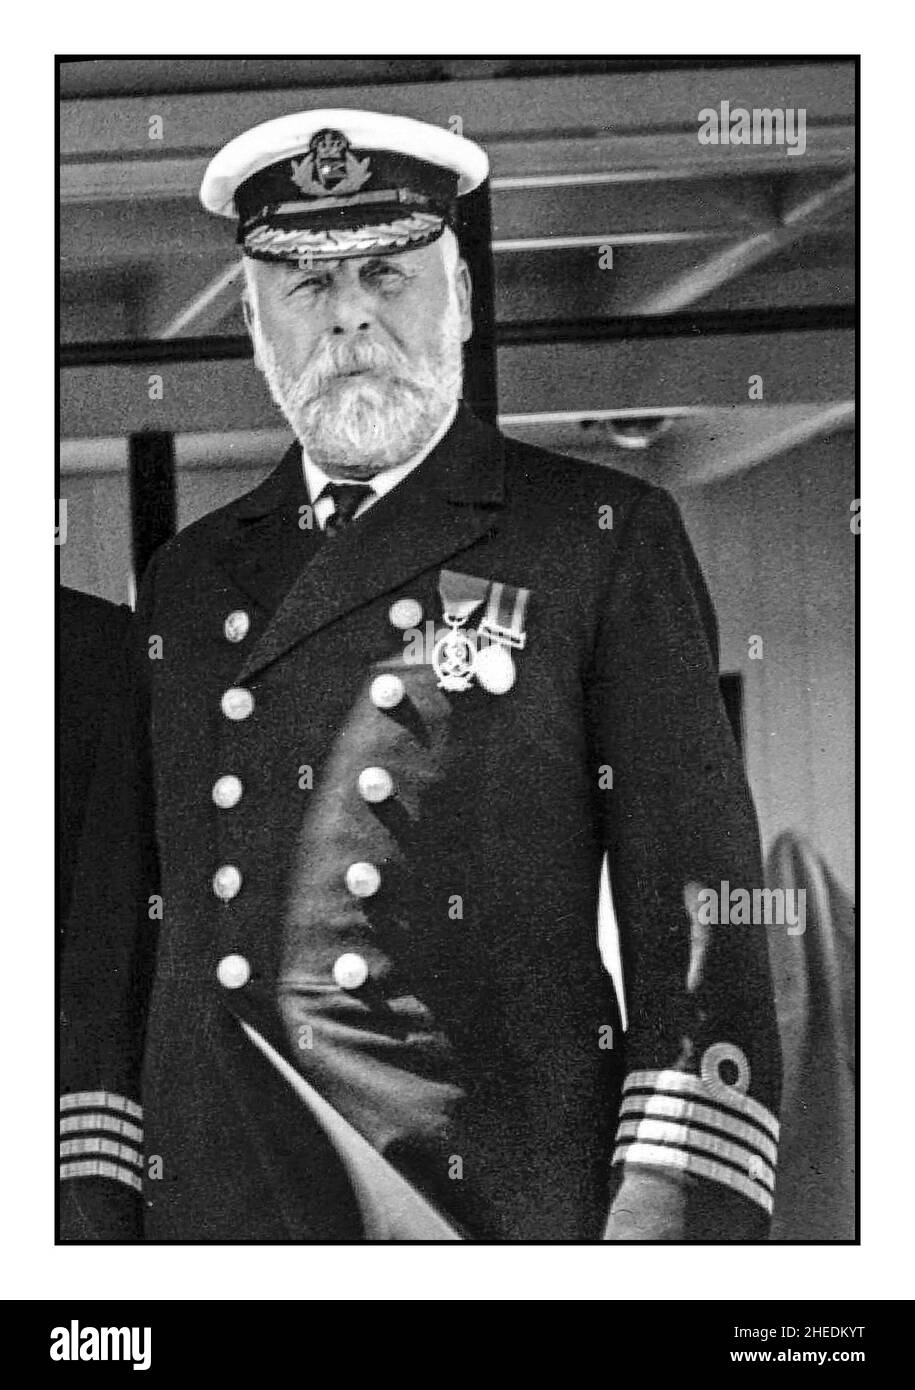 CAPITAINE DU TITANIC EDWARD SMITH 9th juin 1911 .le capitaine Edward Smith est le plus célèbre pour son rôle à la tête du Titanic, le capitaine pendant le dernier voyage désastreux et le naufrage du Titanic.Il descendit avec son navire. Banque D'Images